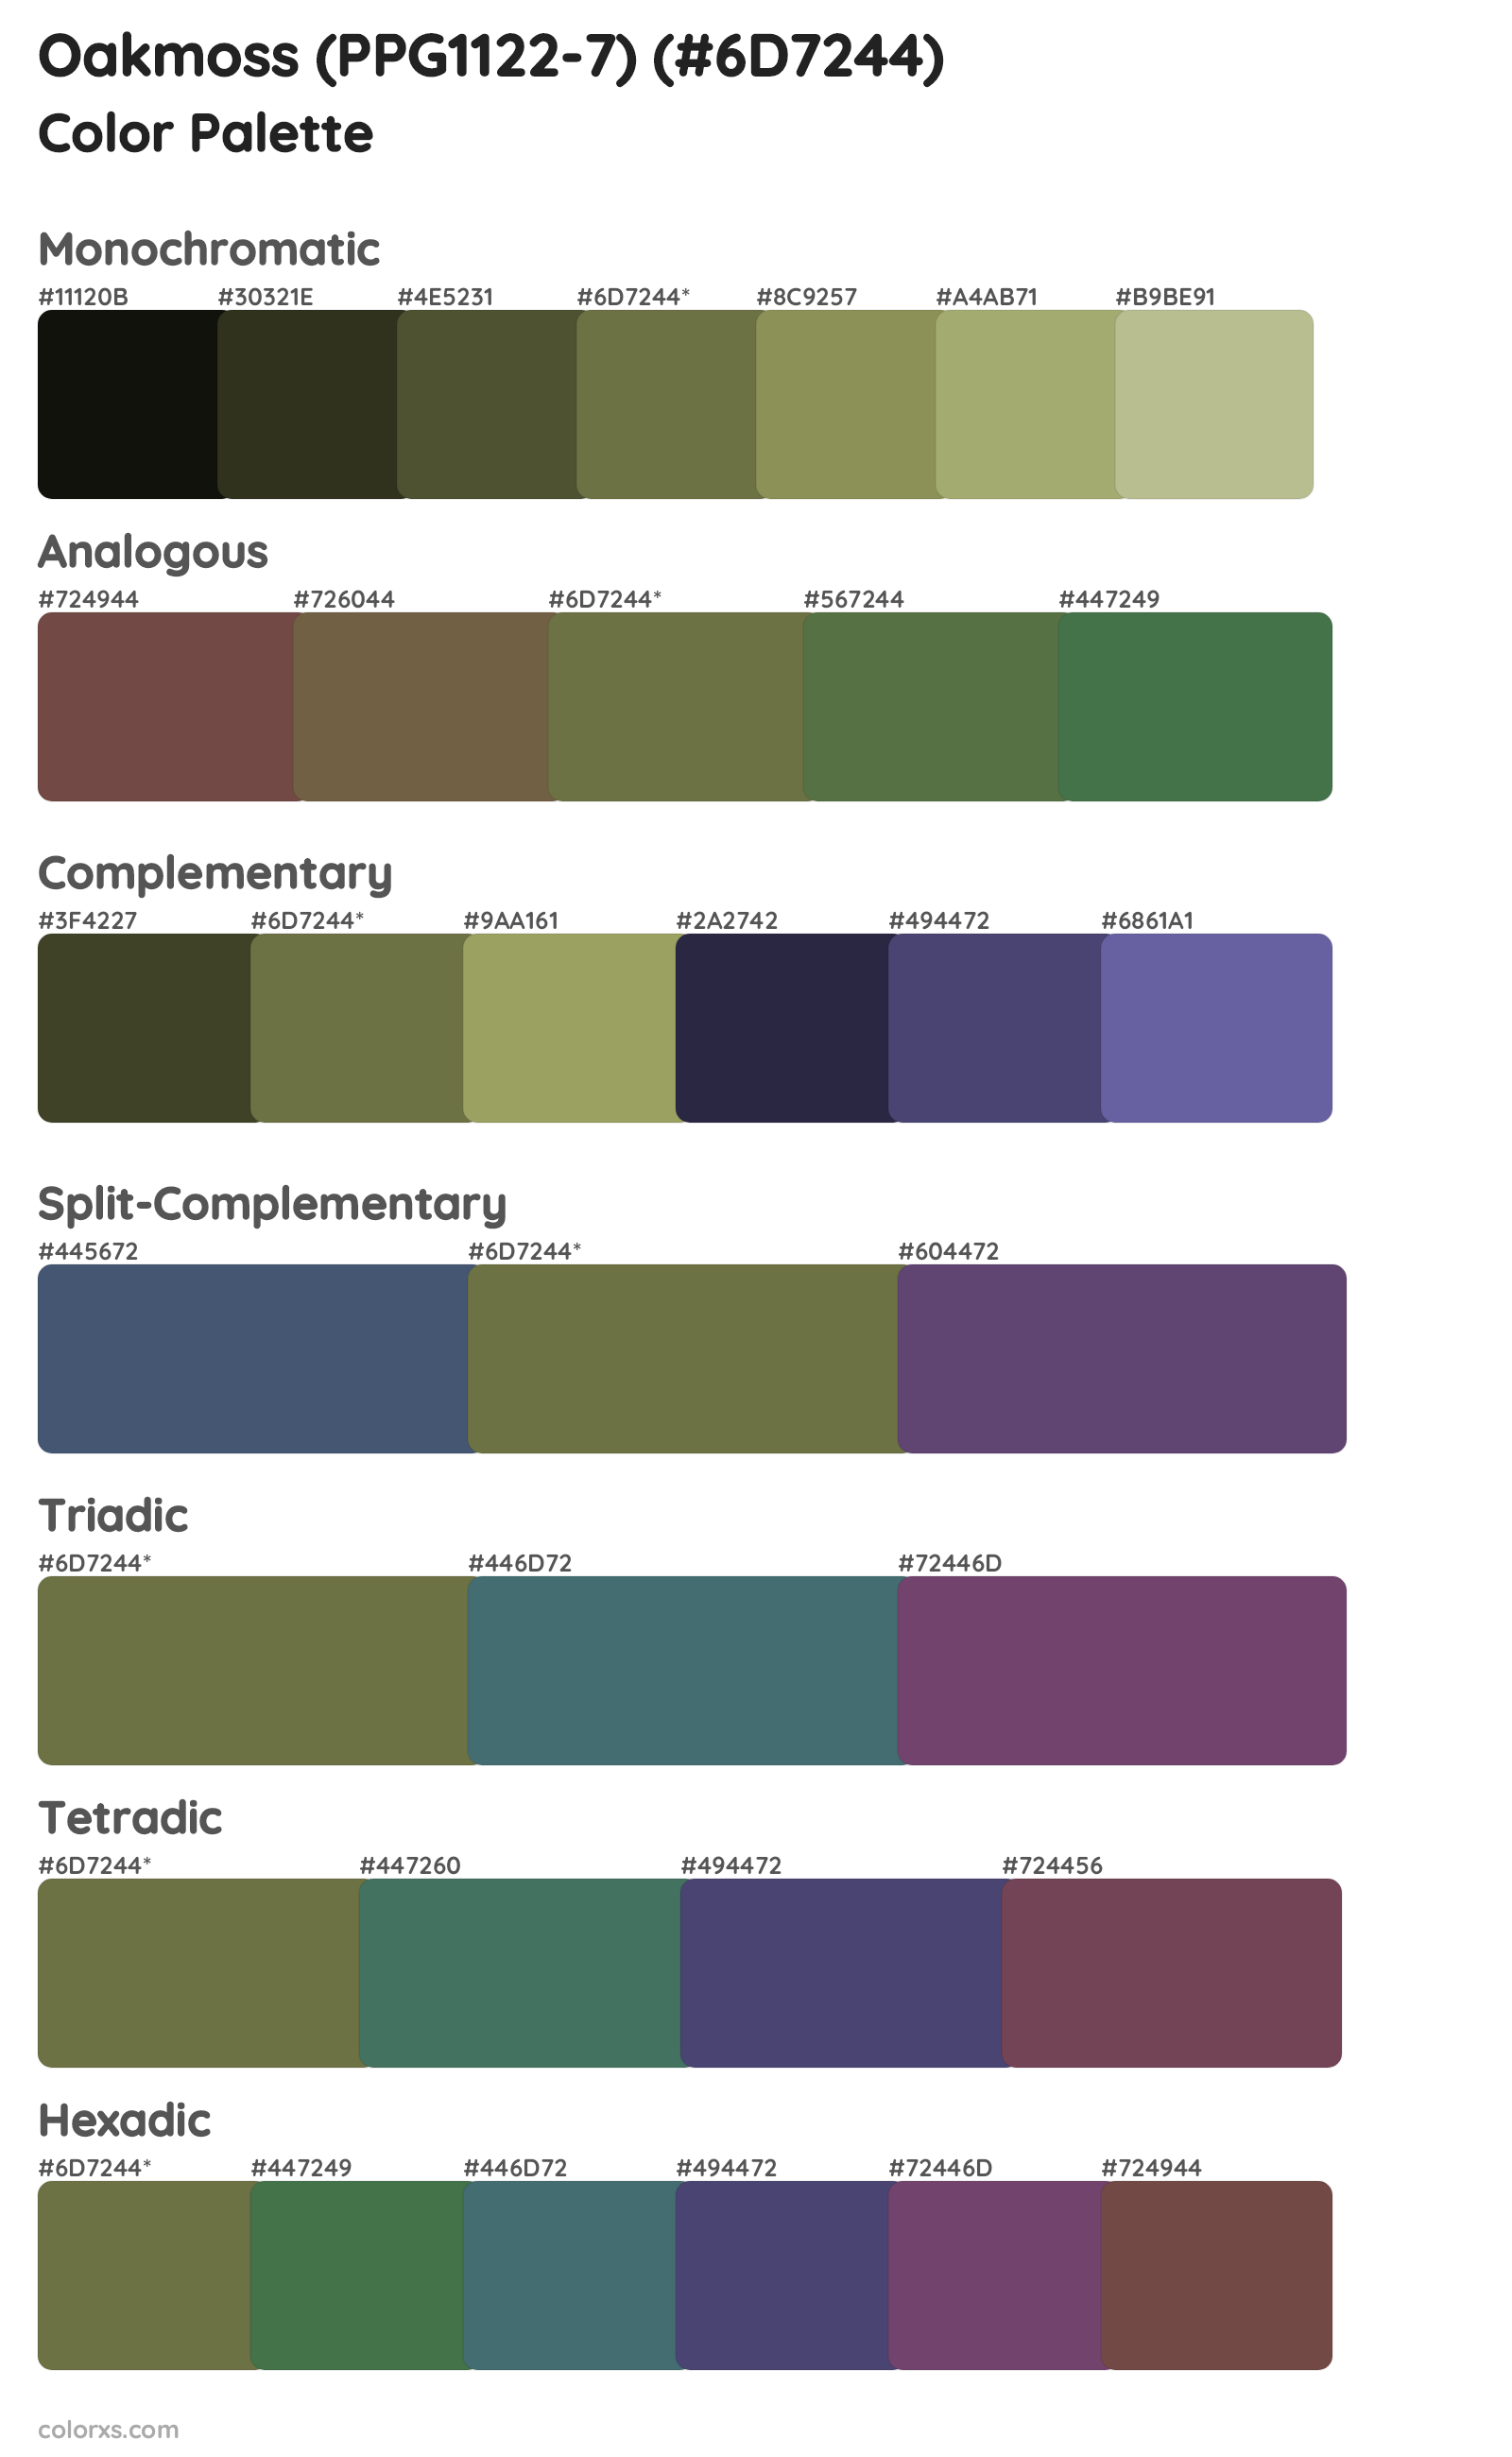 Oakmoss (PPG1122-7) Color Scheme Palettes